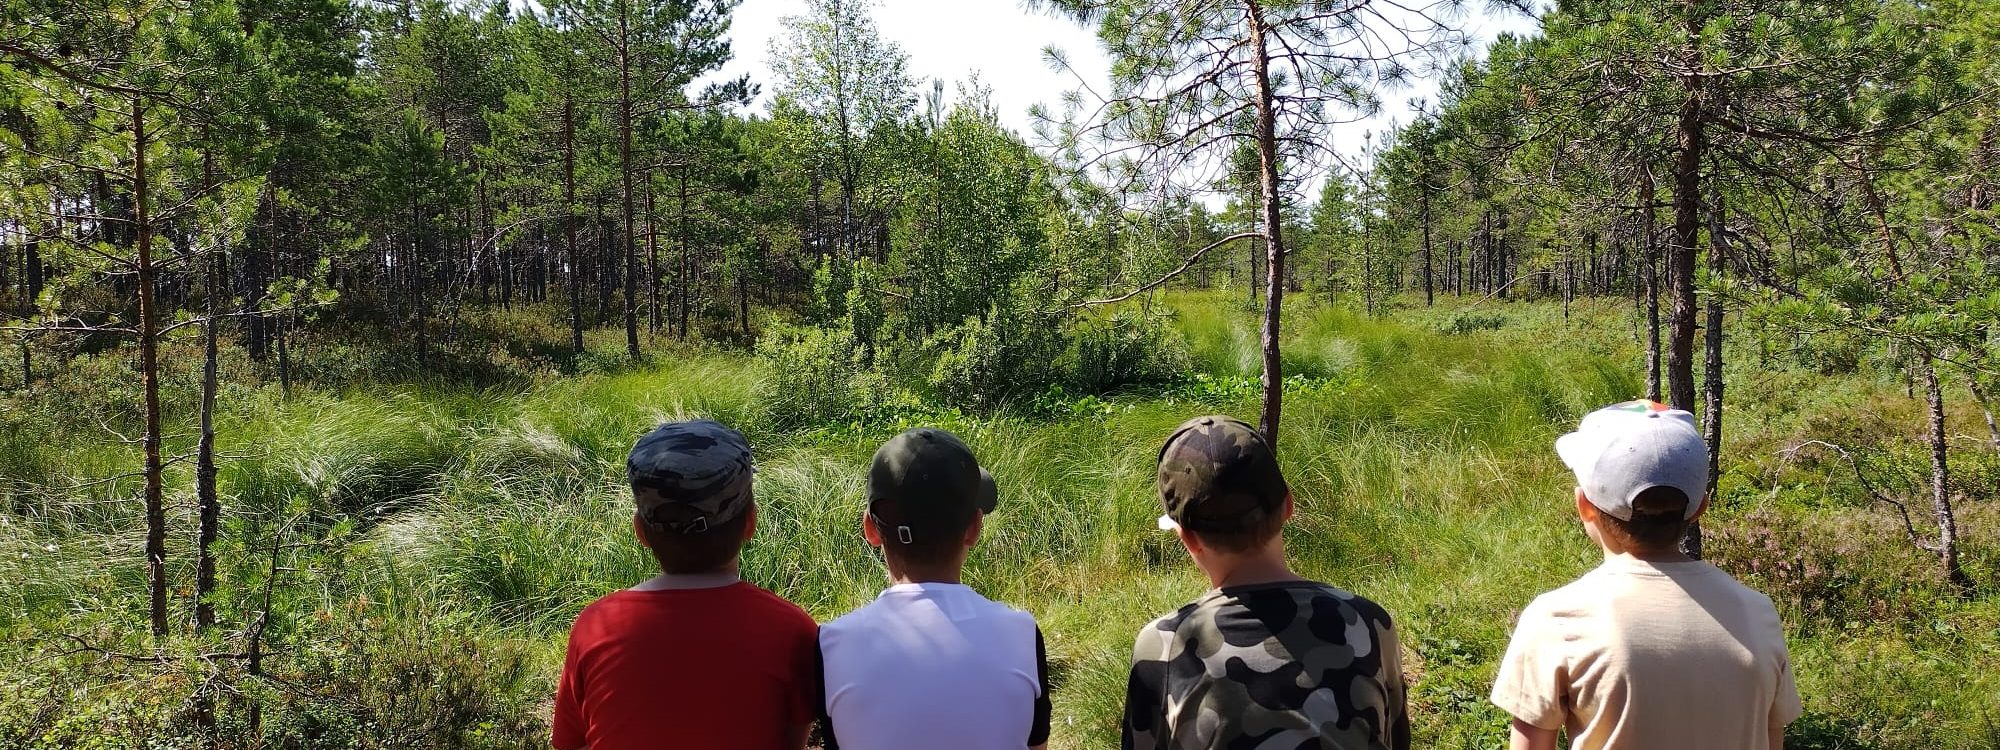 Neljä lasta tuijottaa metsään. Heistä näkyy selät.